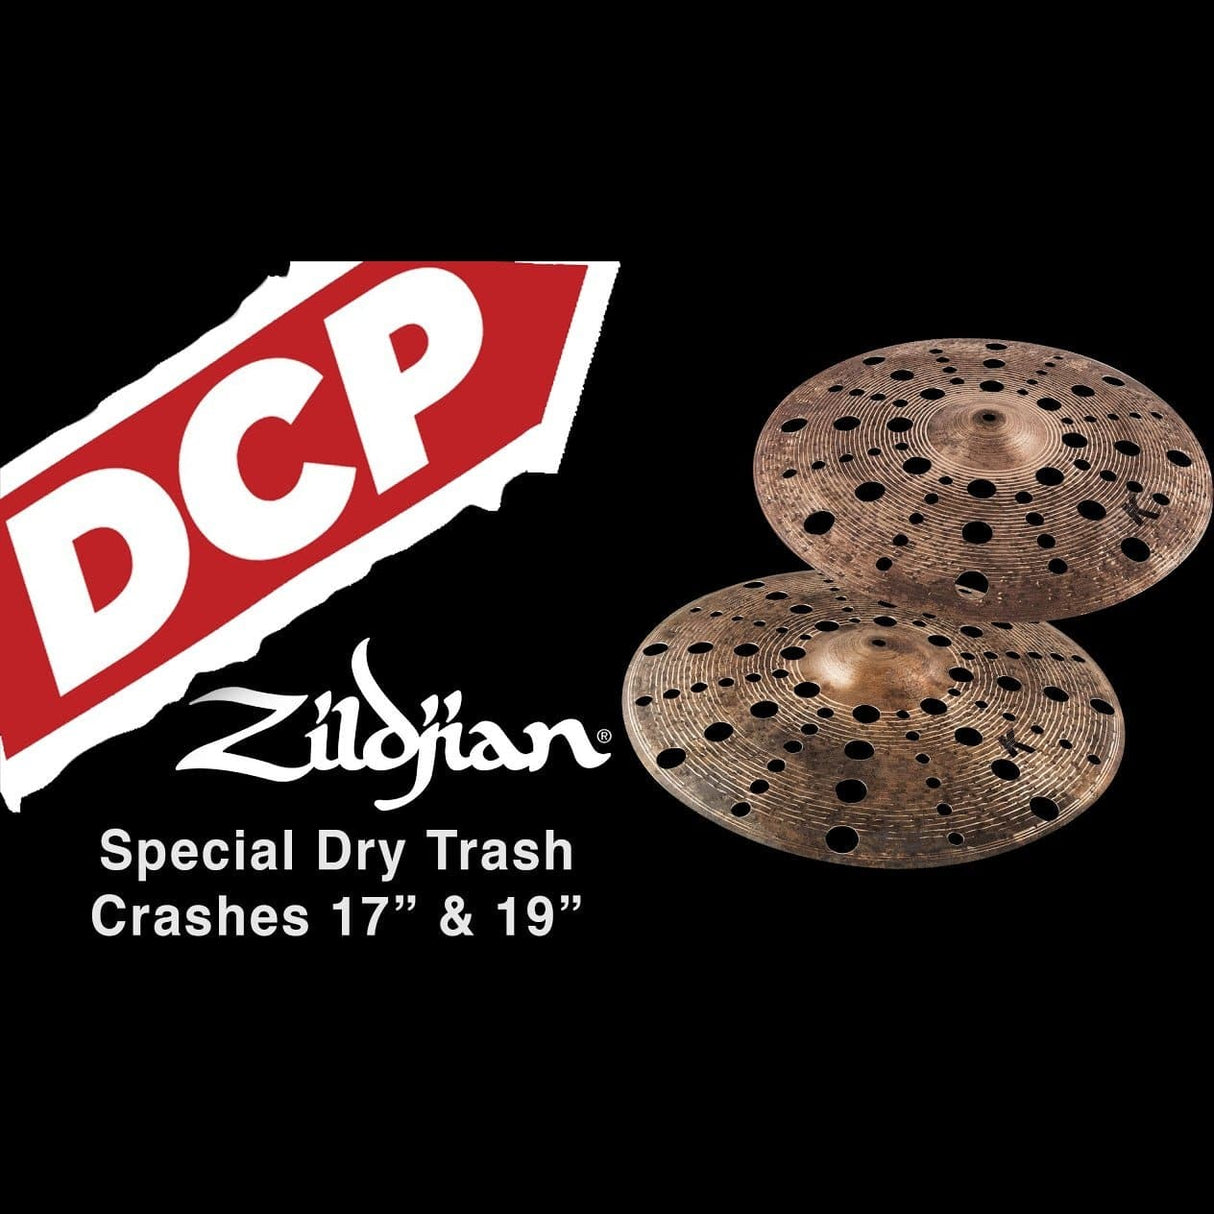 Zildjian K Custom Special Dry Trash Crash Cymbal 19"